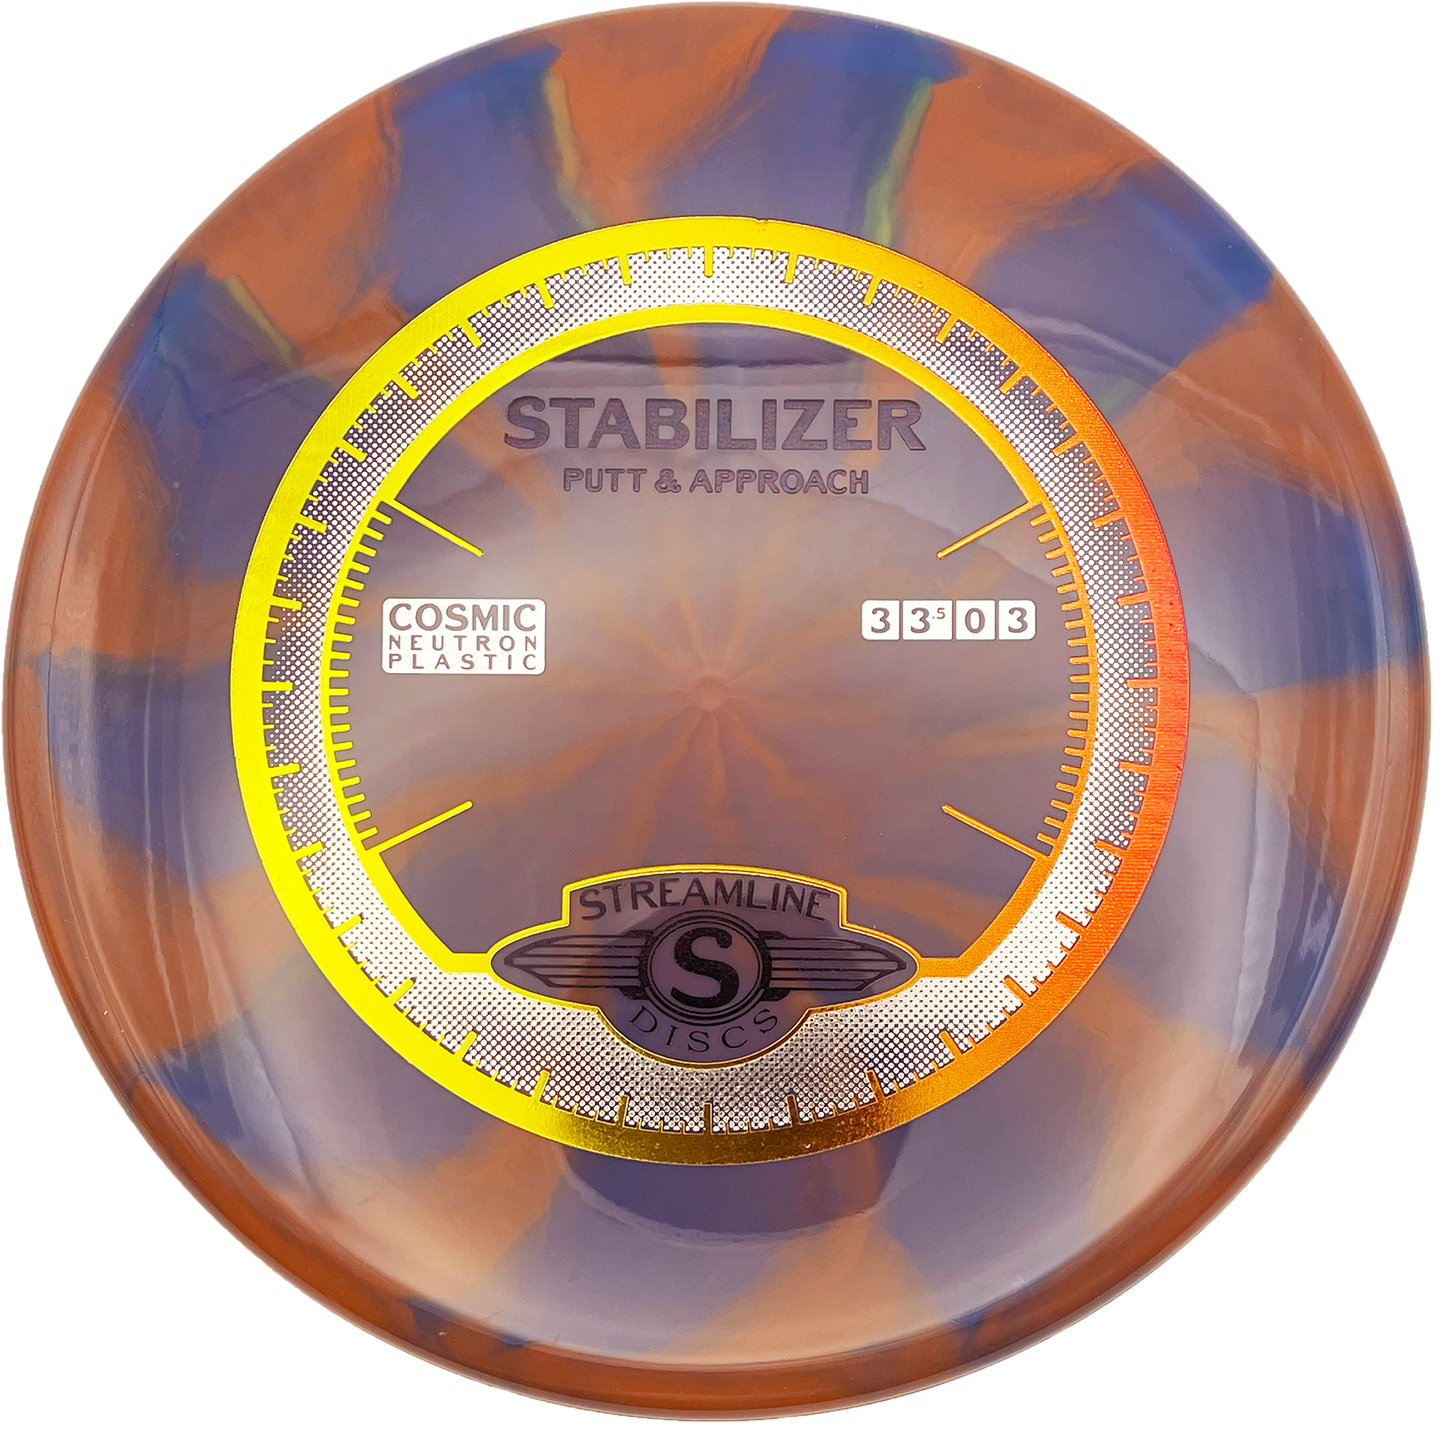 Streamline Stabilizer - Cosmic Neutron - Maroon Swirl